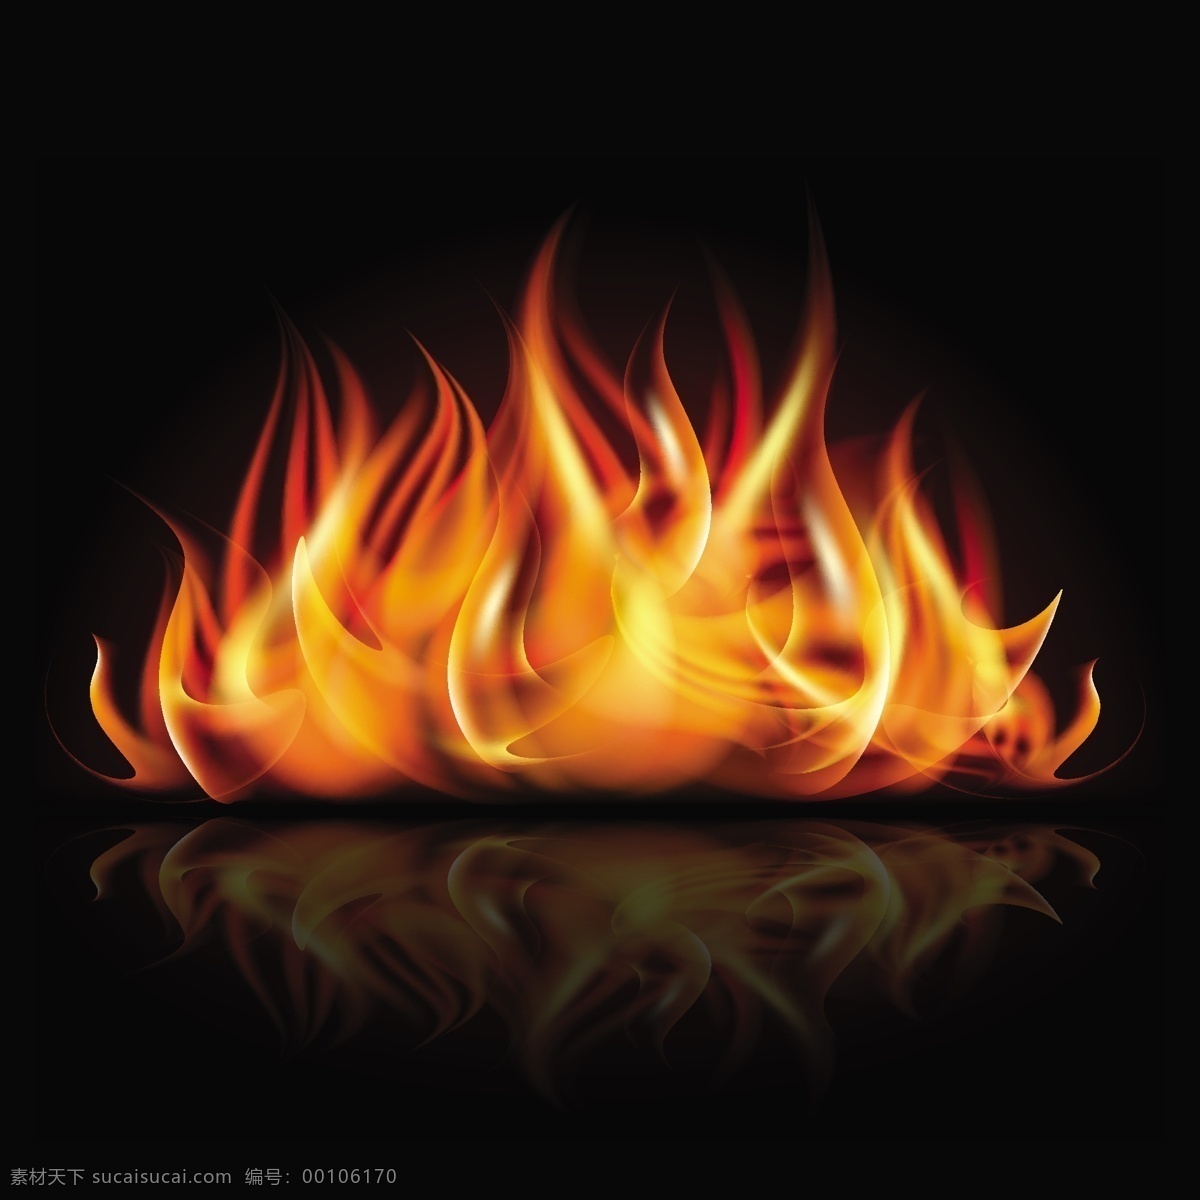 燃烧的大火 火焰 火苗 矢量火焰 大火 燃烧 生活百科 矢量素材 黑色